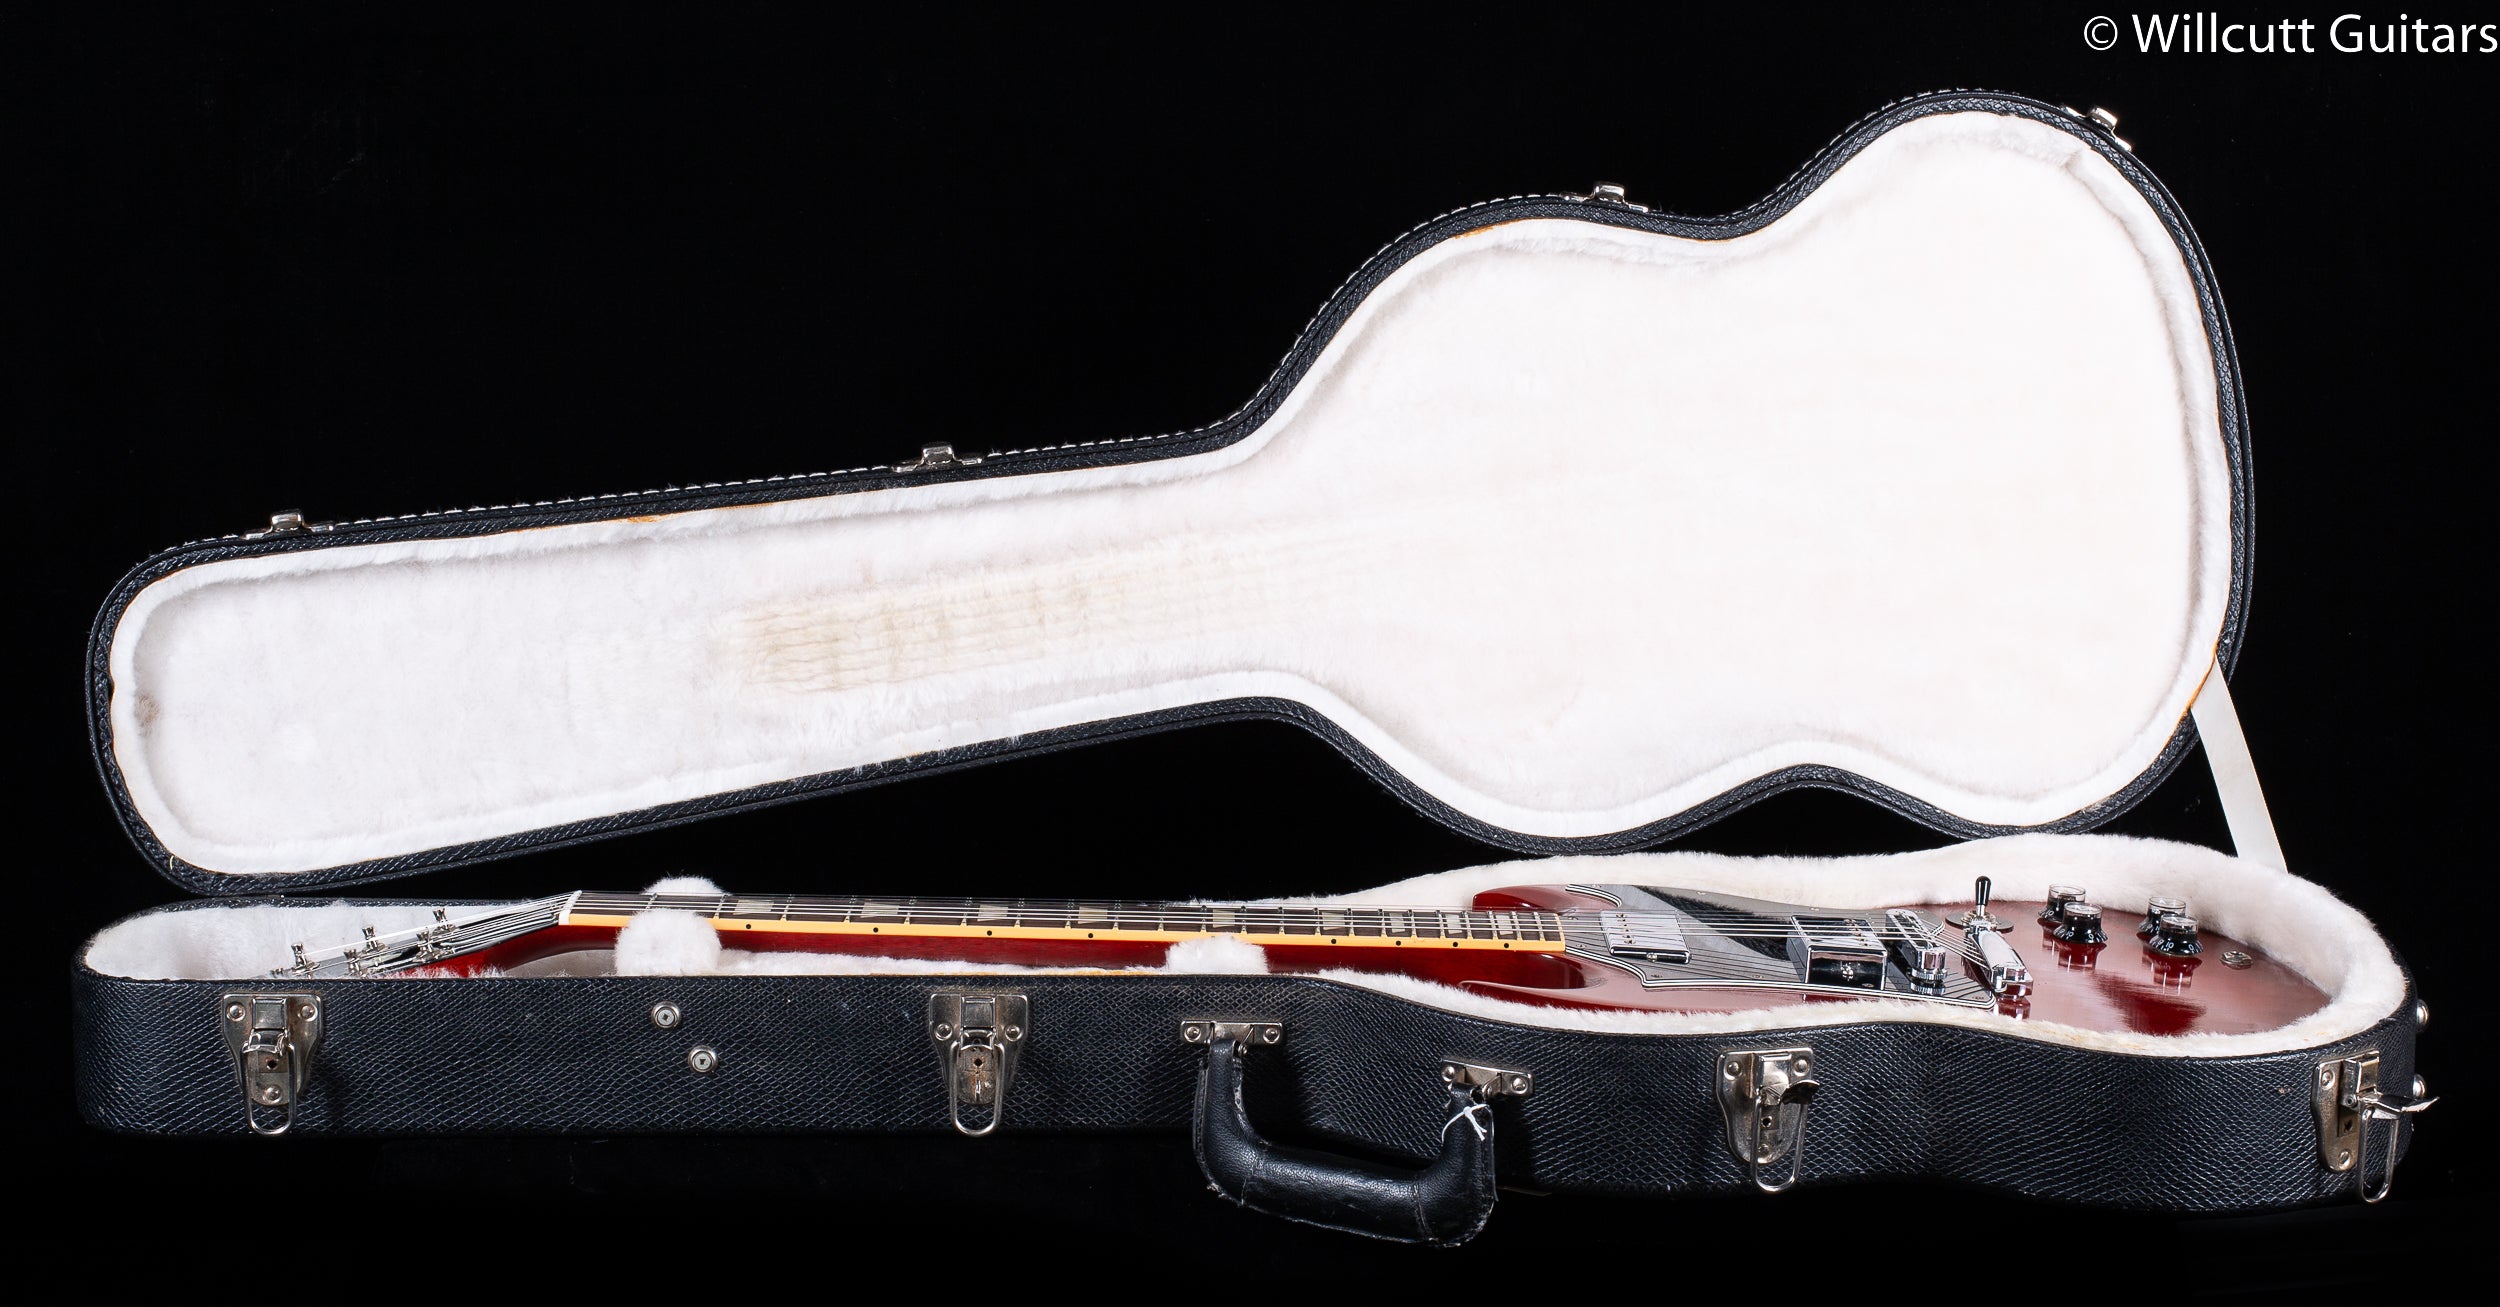 2010 Gibson SG Standard Cherry - Willcutt Guitars